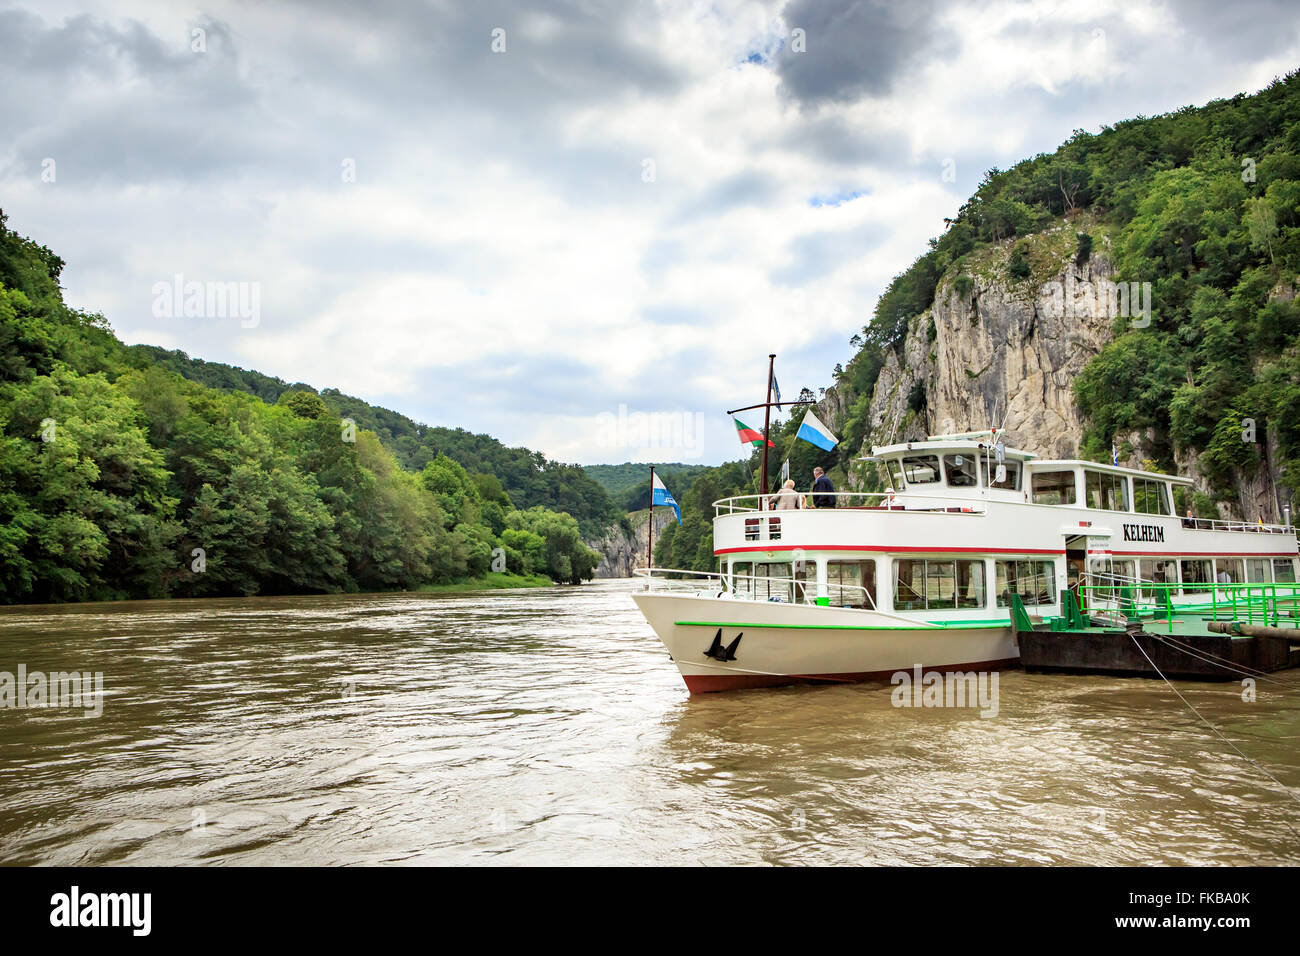 REGENSBURG, BAVARIA, GERMANY - CIRCA JULY, 2015: Danube river near Regensburg Stock Photo